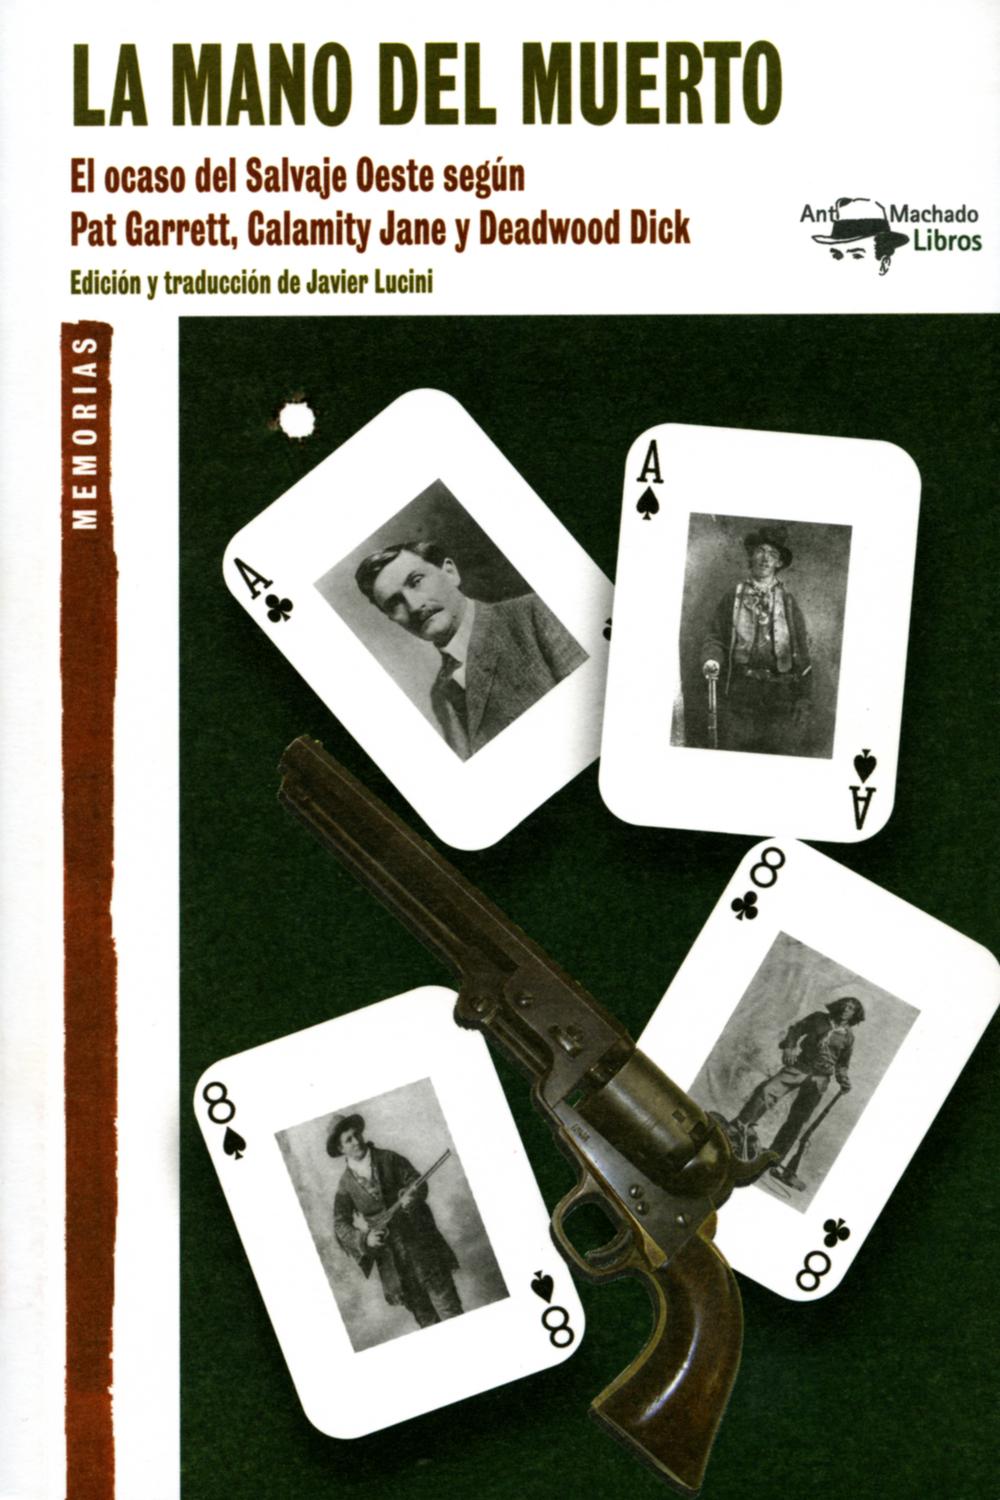 La mano del muerto - Pat Garrett, Calamity Jane, Deadwood Dick,Javier Lucini,